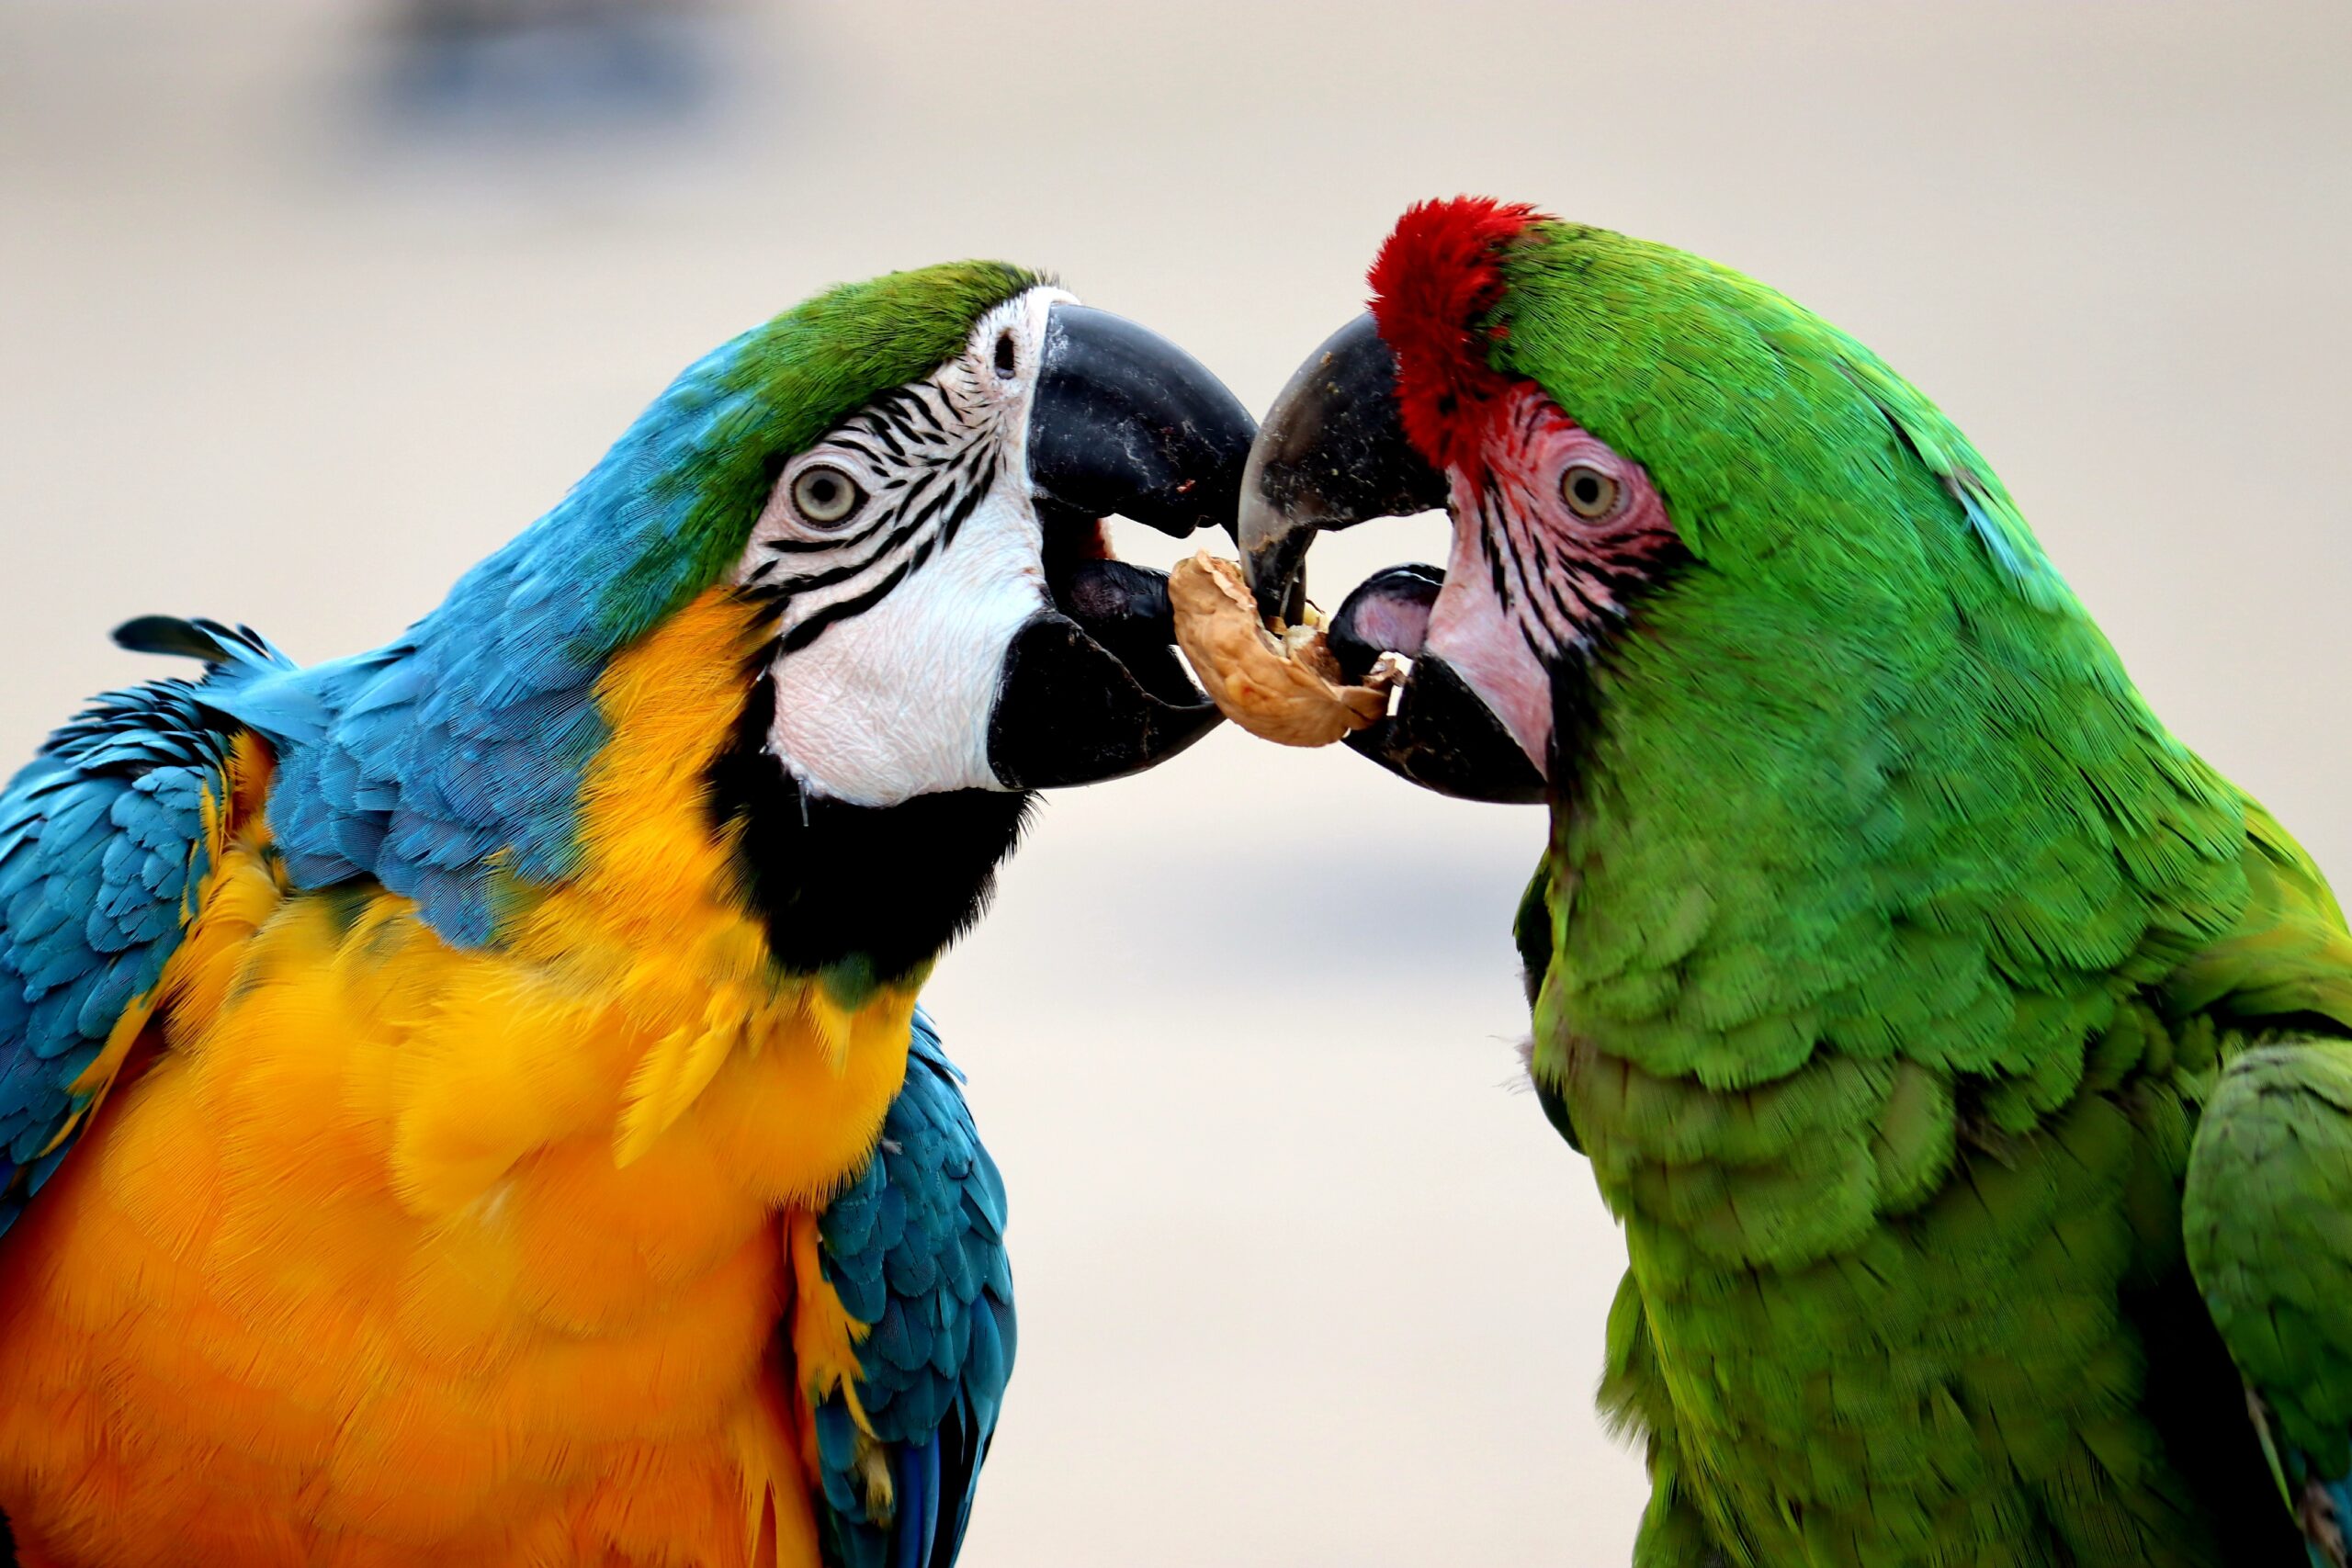 Macaws eating photo by Domenik Kowalewski